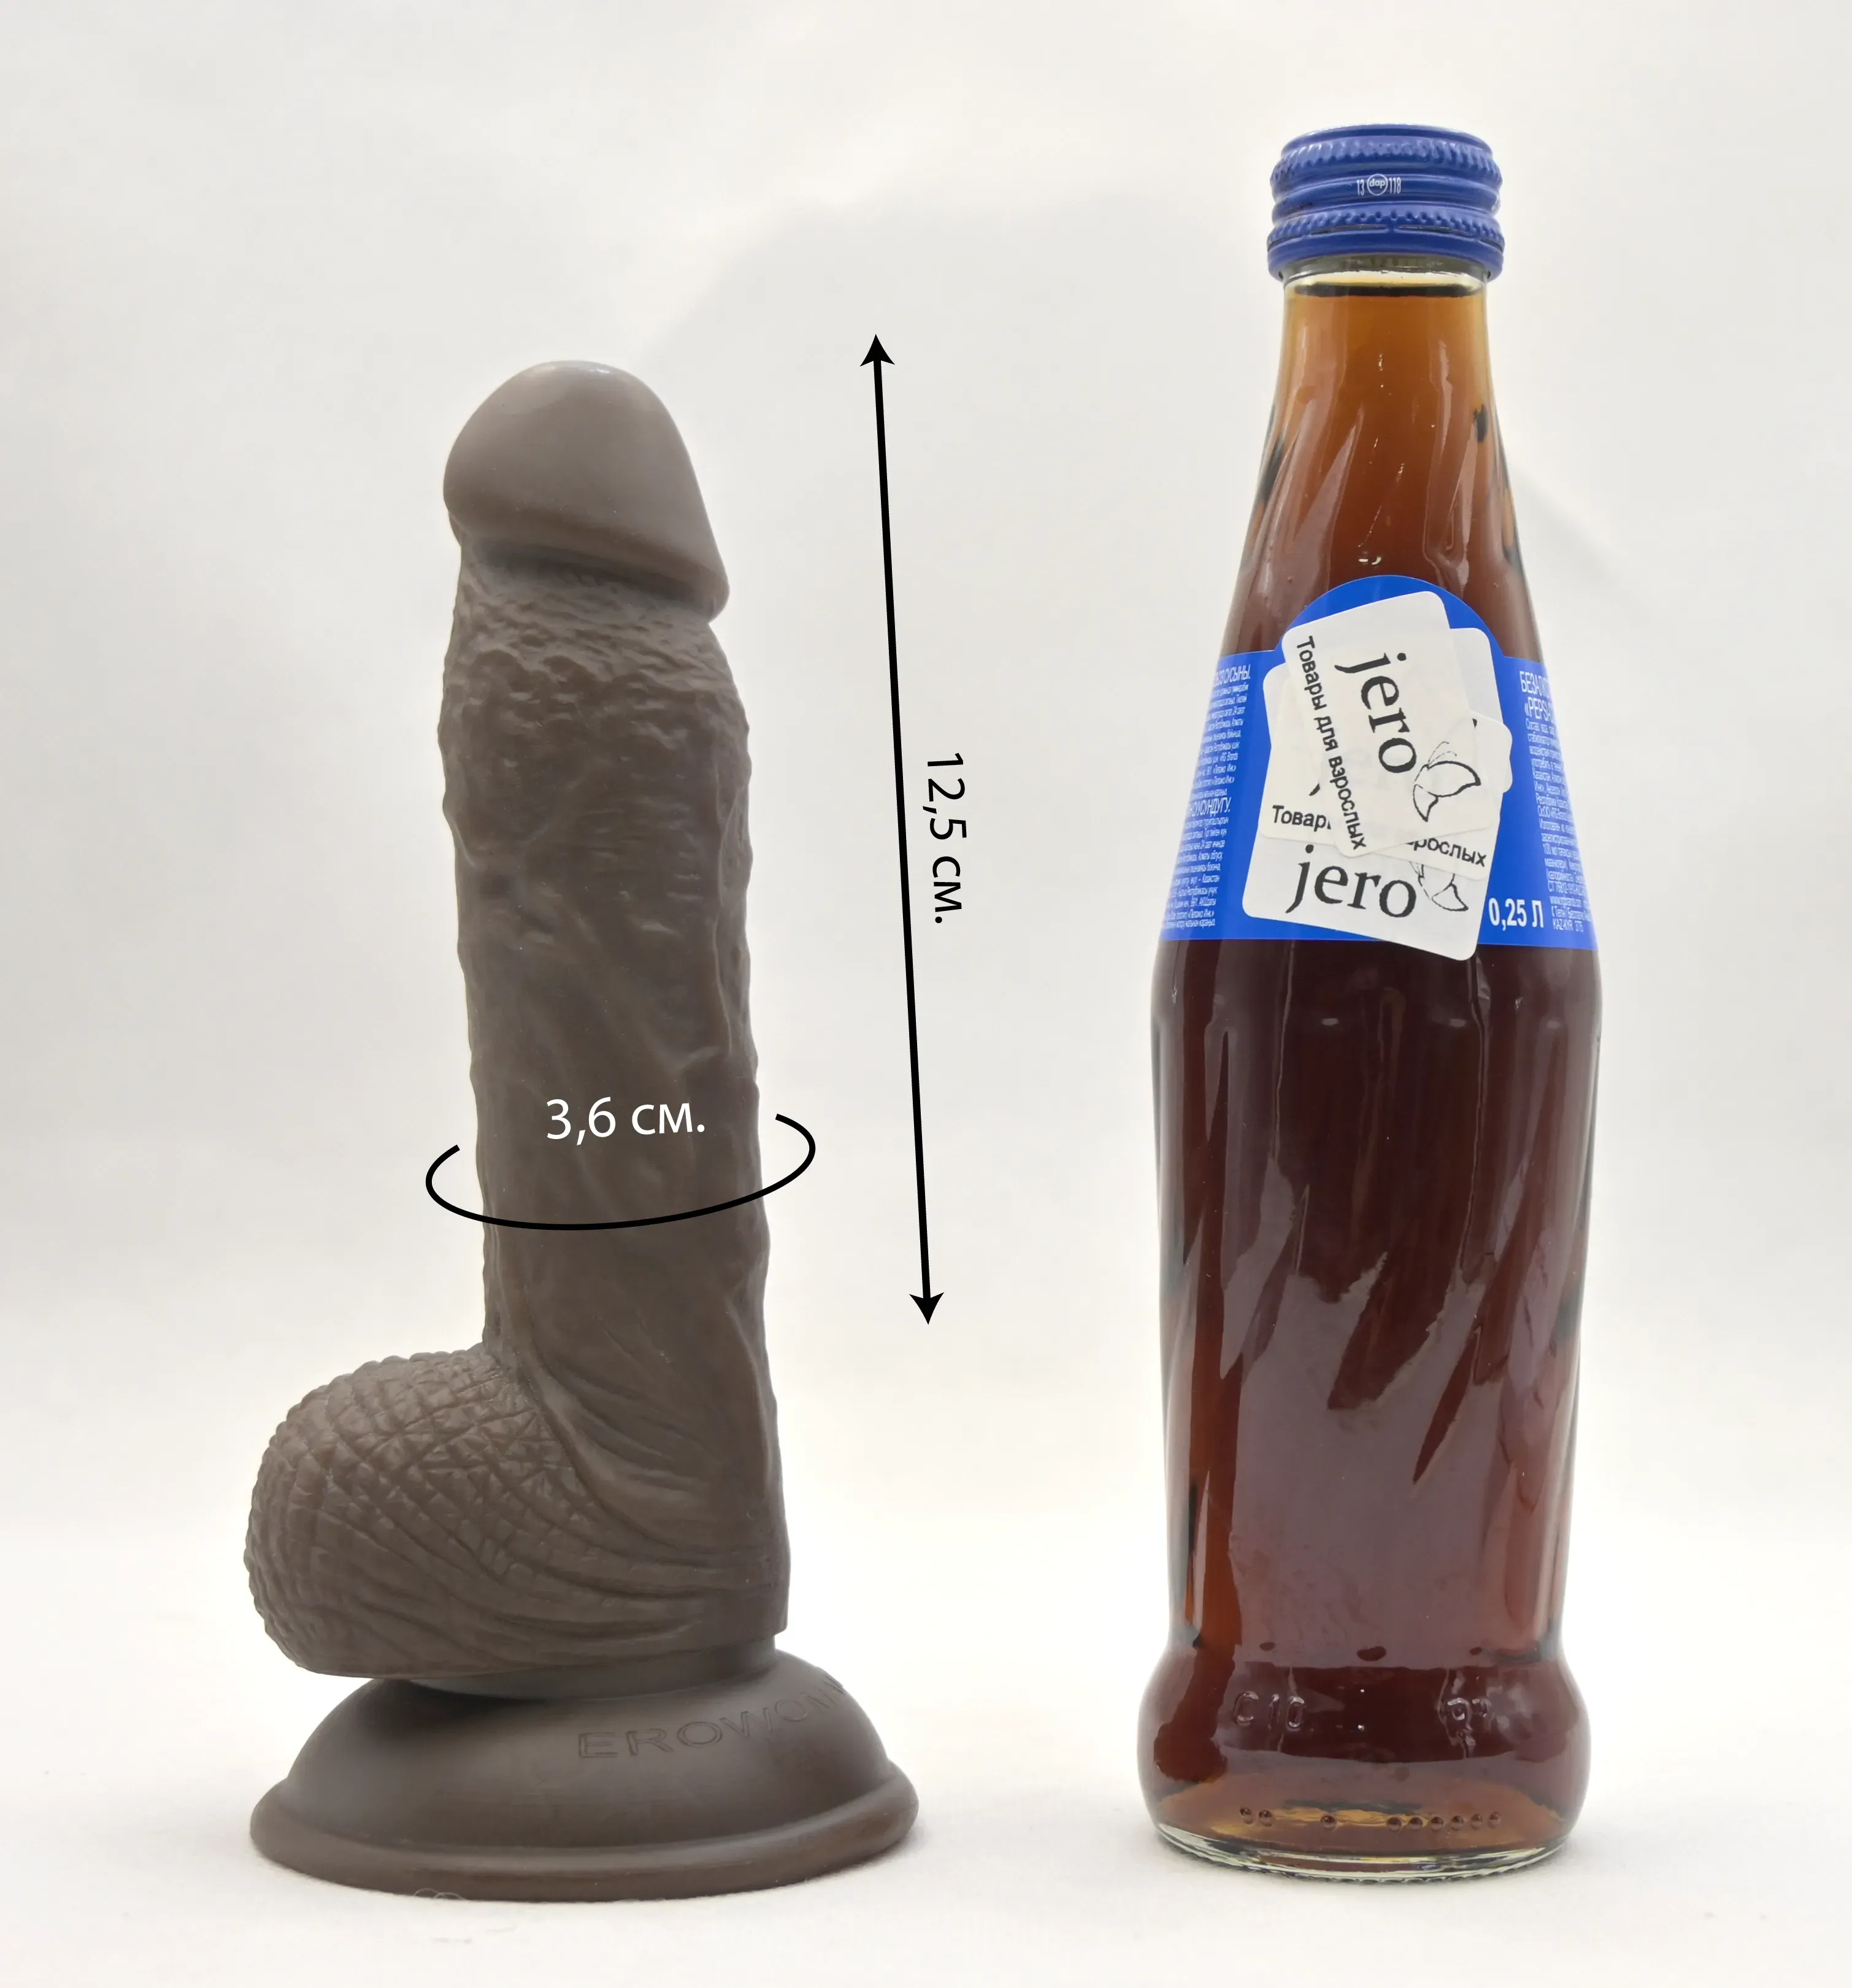 Размеры фаллоимитатора и сравнение с бутылкой пепси